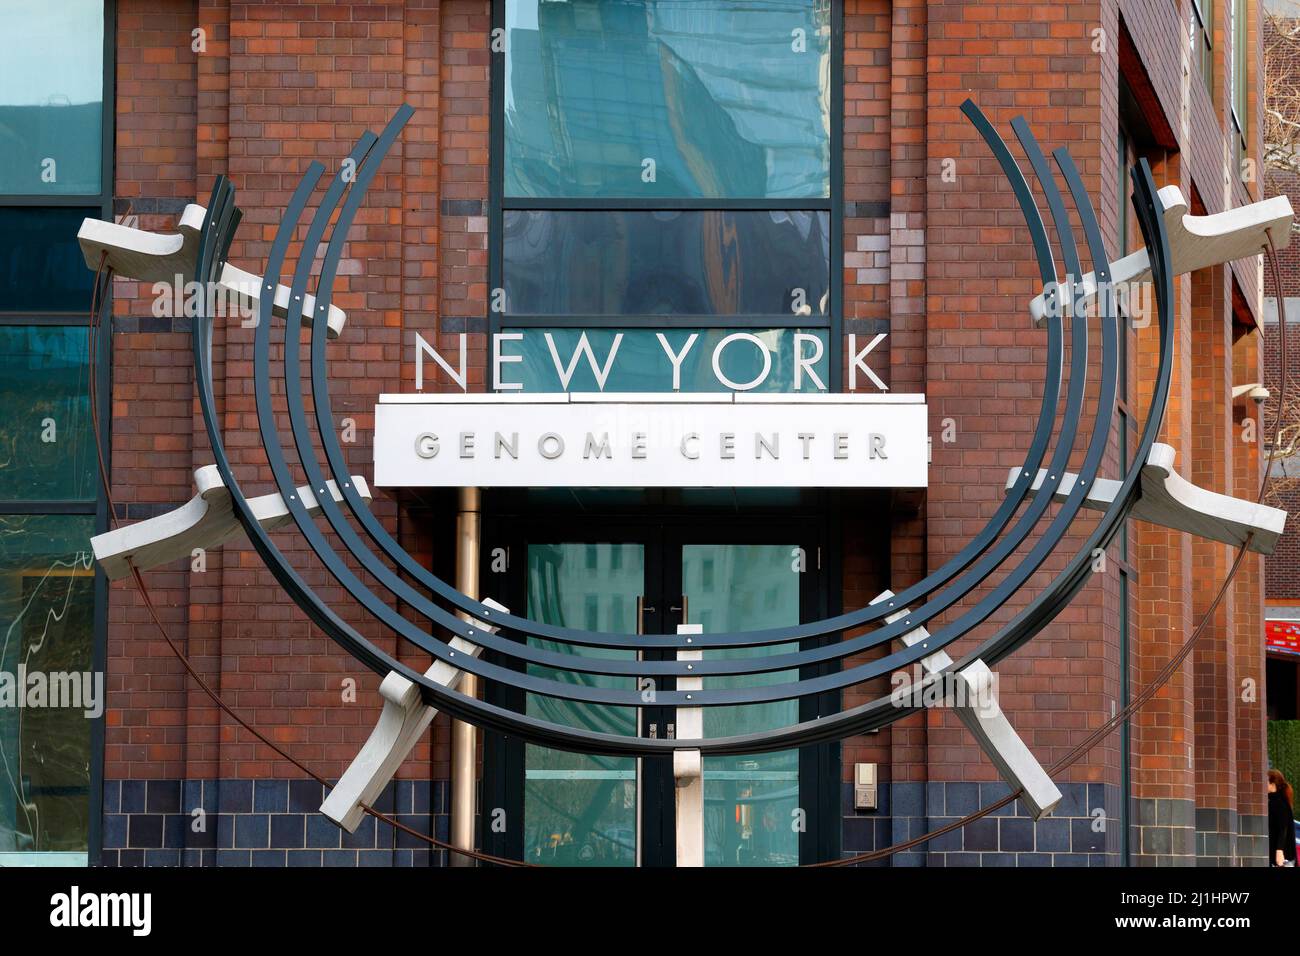 New York Genome Center, 101 6. Ave, New York, NYC Schaufenster Foto einer akademischen biomedizinischen Forschungseinrichtung in Manhattan. Stockfoto